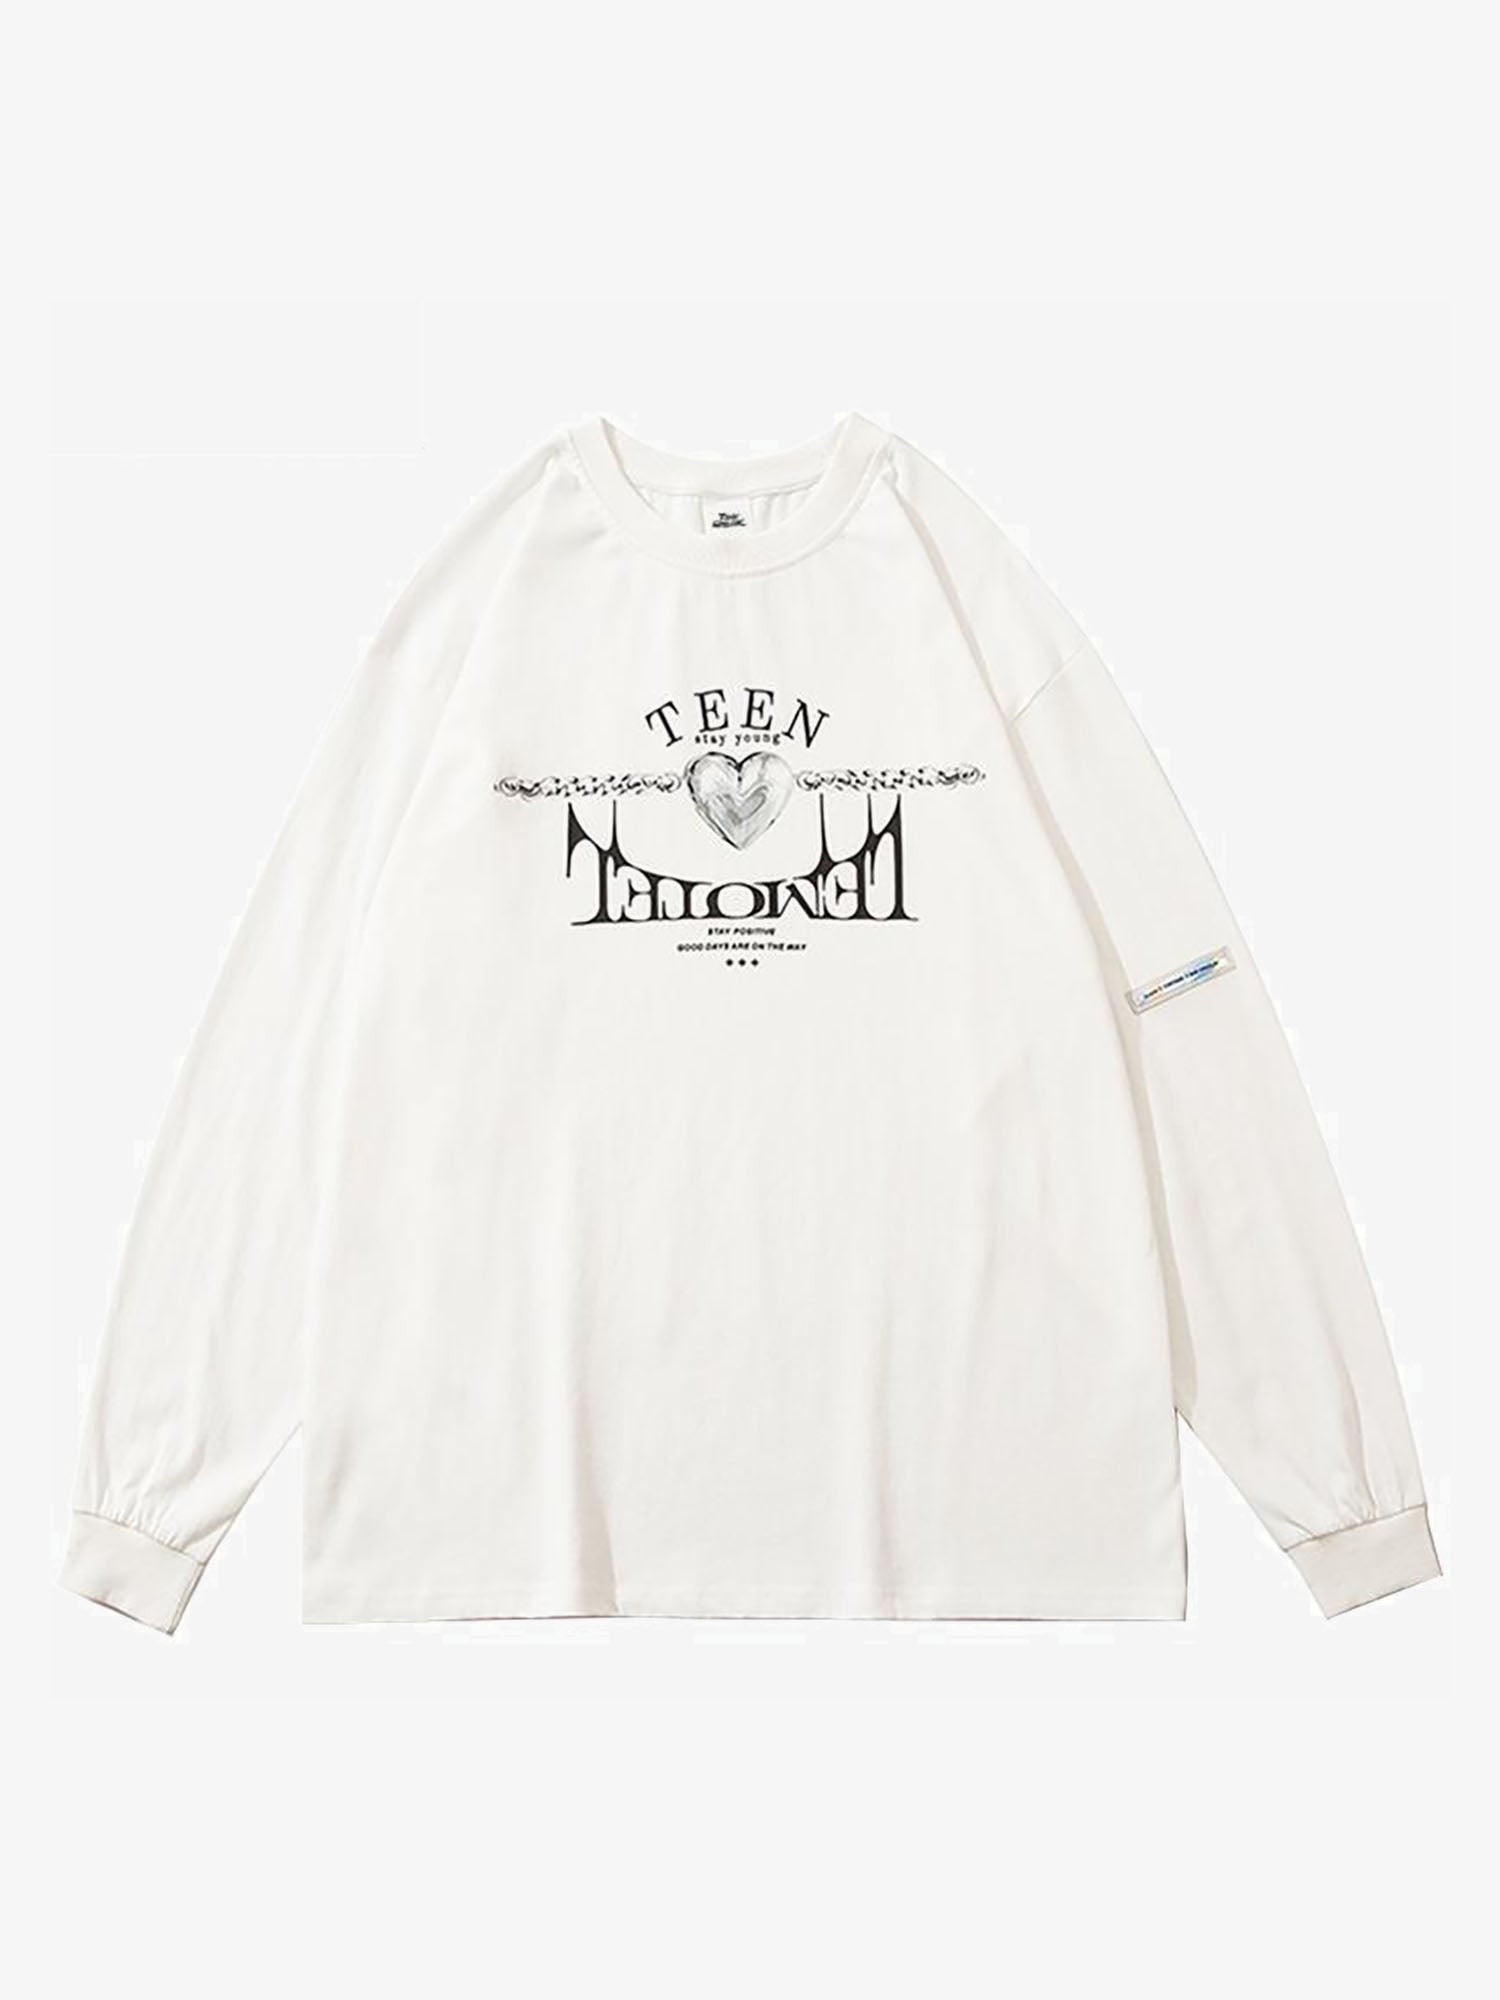 Justnotag Sweatshirt mit grafischem Buchstabendruck und Frauenfigur